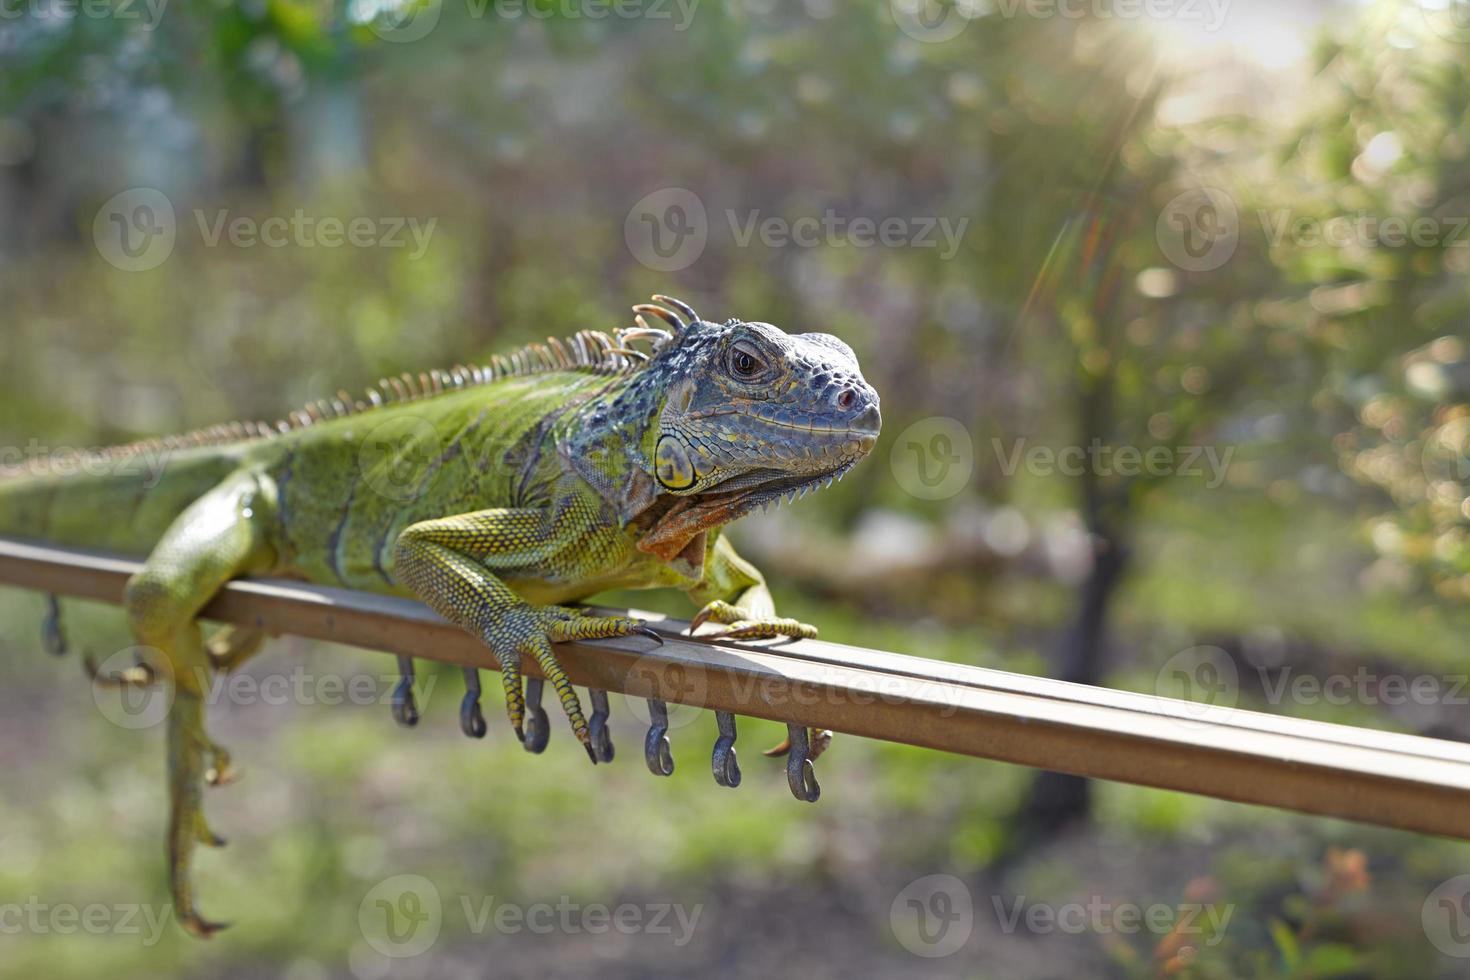 The iguana photo